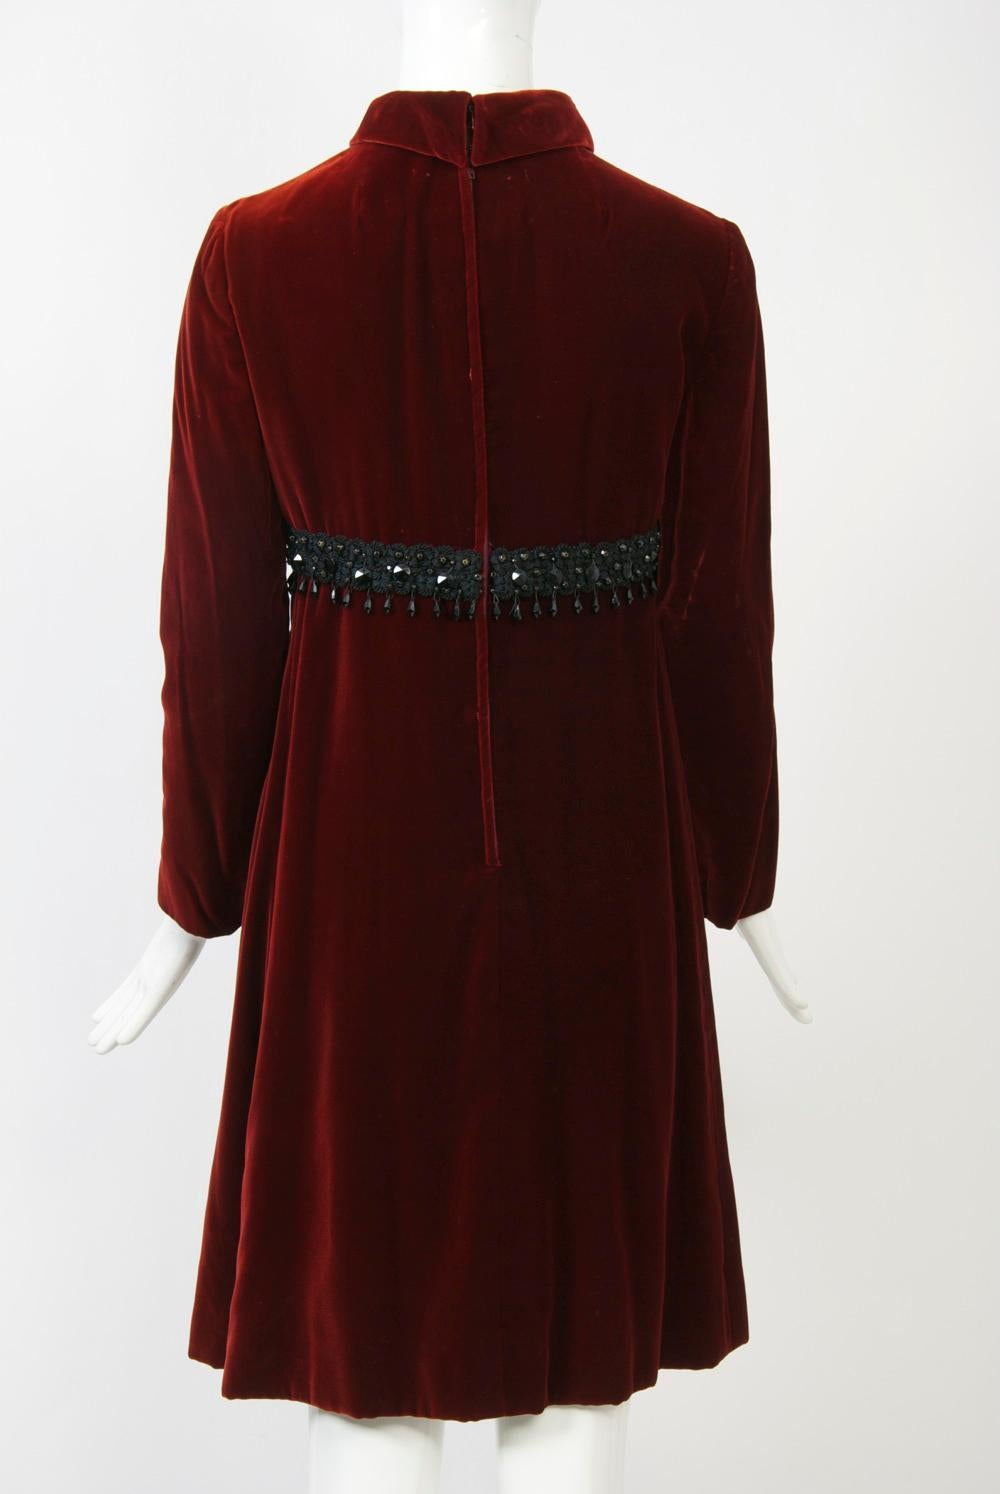 Black Kiki Hart Burgundy Velvet Dress For Sale